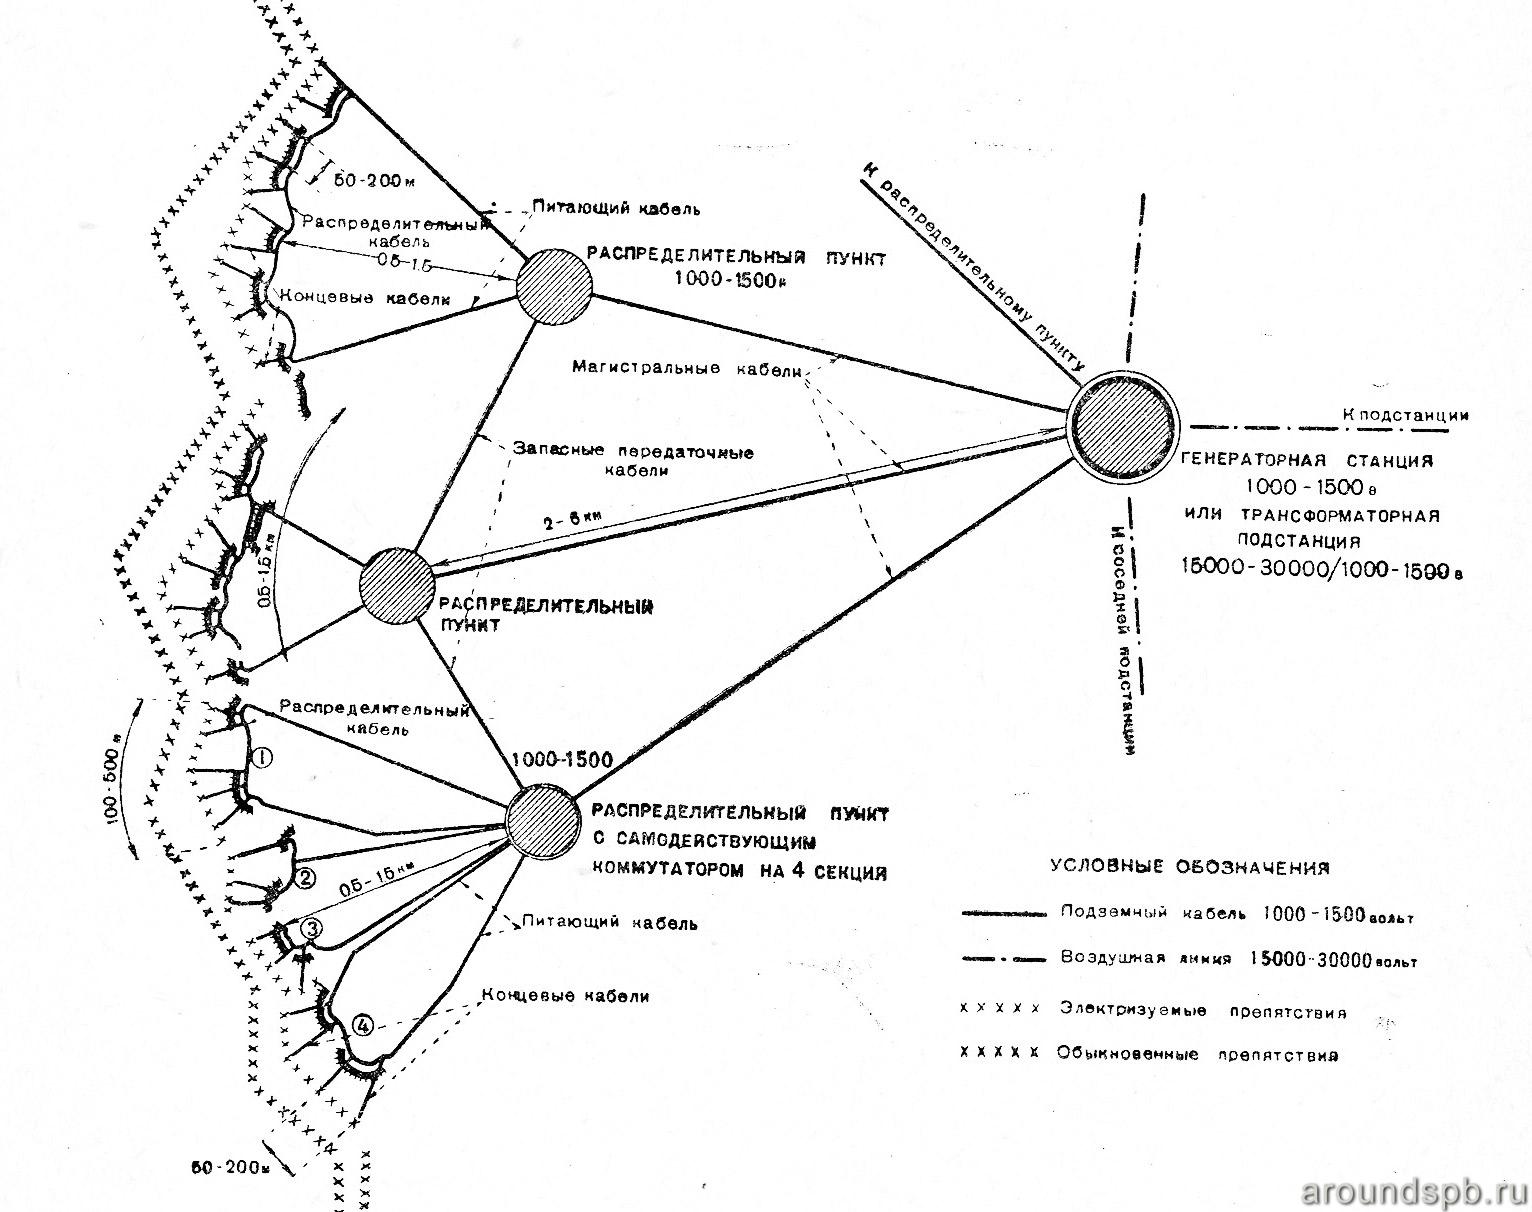 Схема сети питающих проводов  (на примере Лемболовского батрайона). 1938 год.